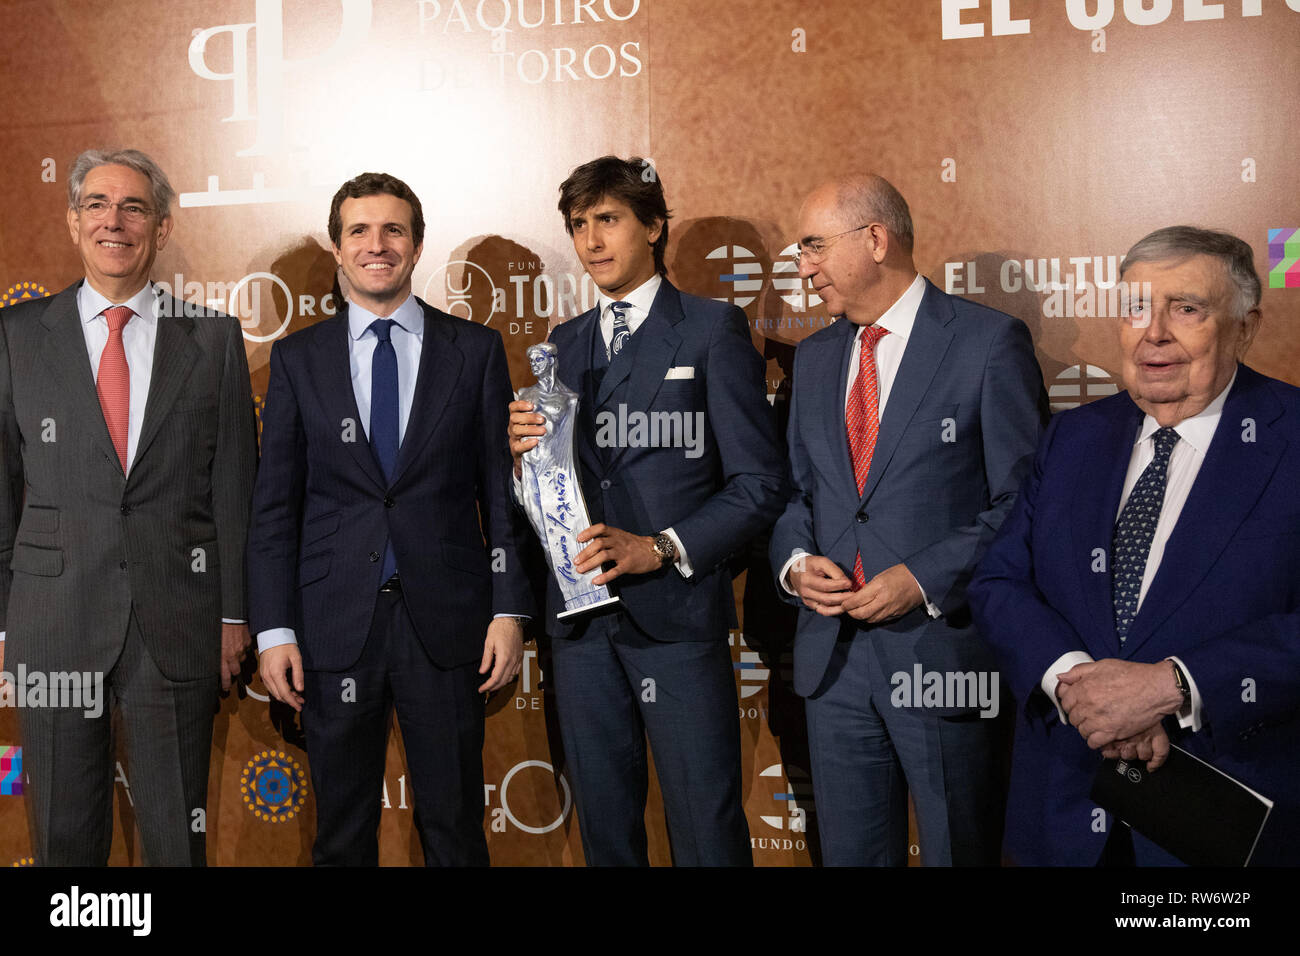 Le Président du Partido Popular Pablo Casado (deuxième à gauche), Andres Roca Rey et membre du jury sont vus au cours de la PX Paquiro Awards Edition à Madrid. Banque D'Images